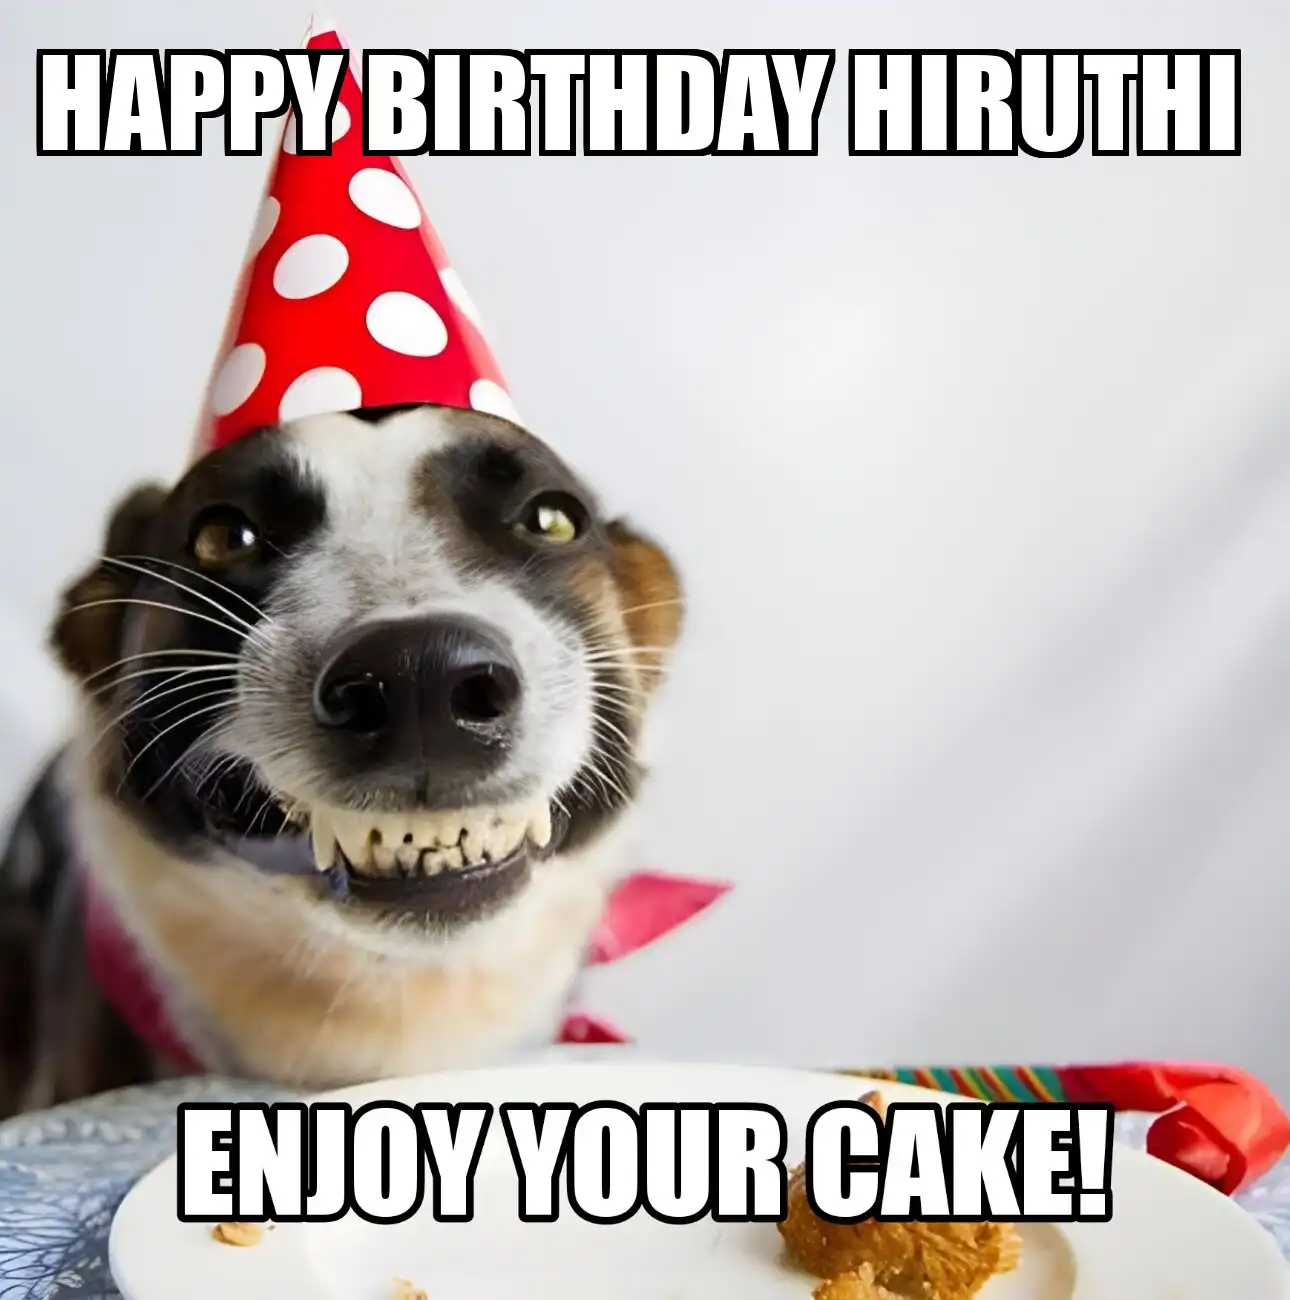 Happy Birthday Hiruthi Enjoy Your Cake Dog Meme